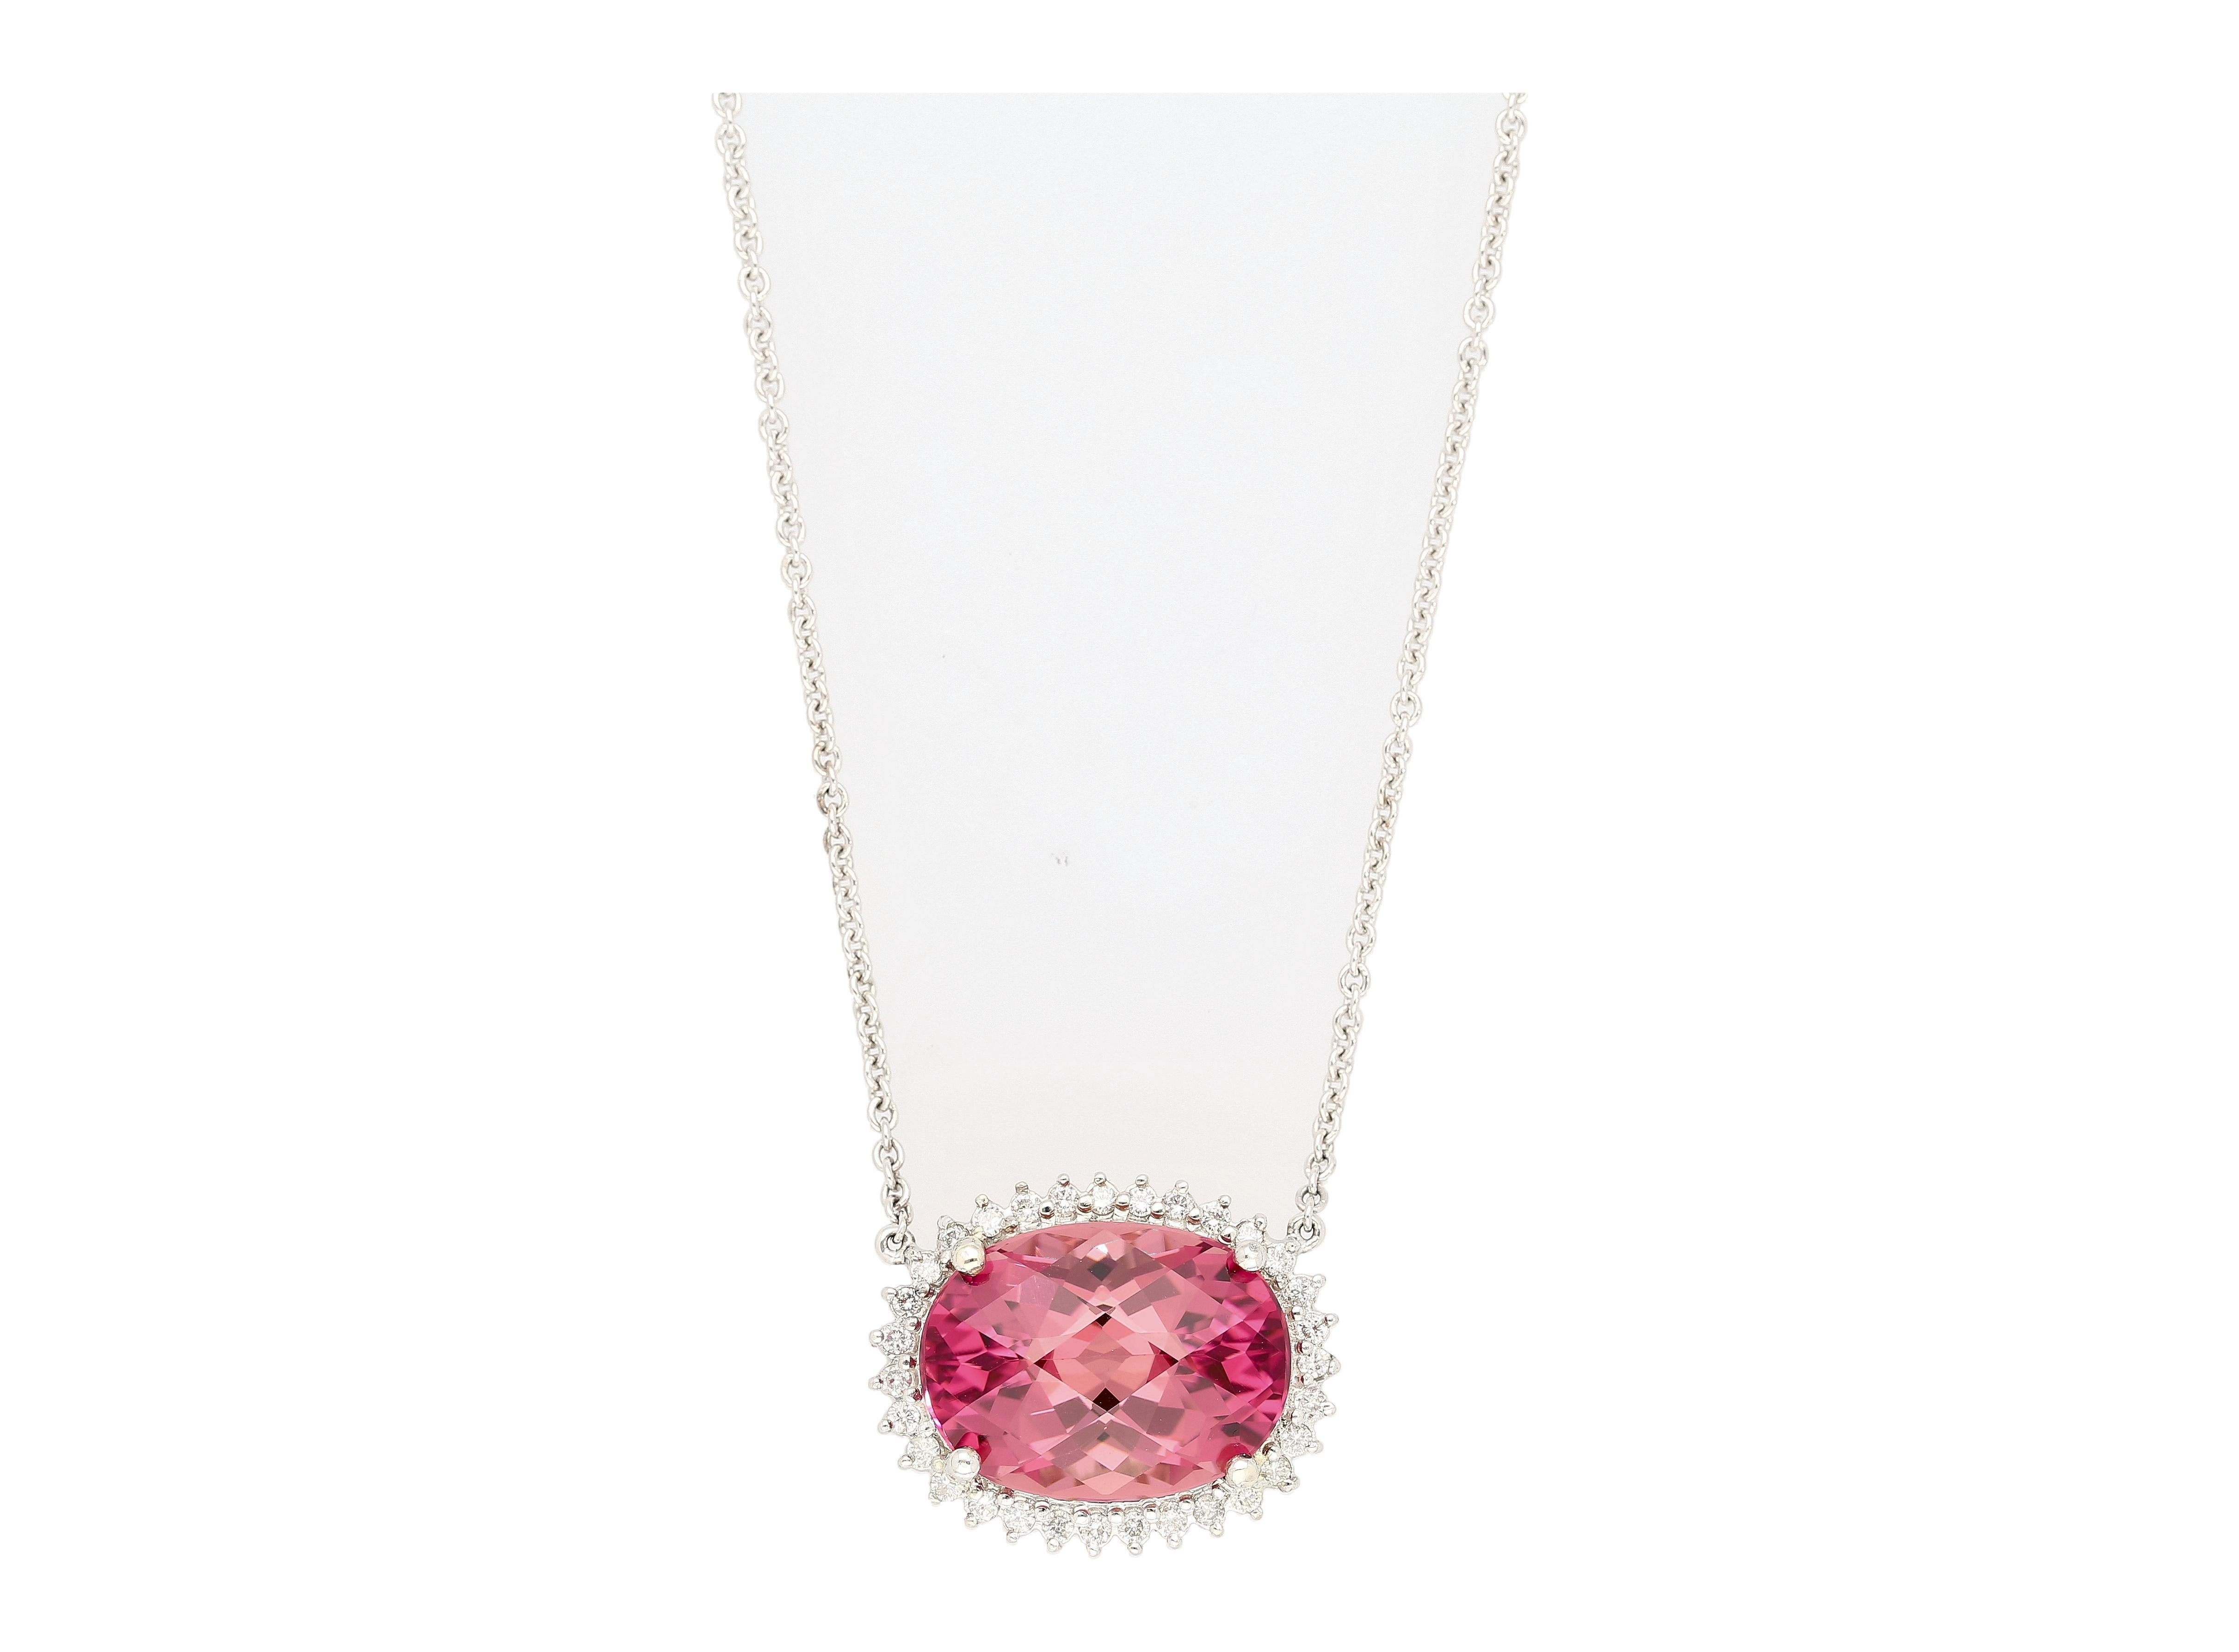 Natürlicher rosa Turmalin & Diamant Halo Floating Anhänger Halskette in 14K/18K Gold. 

Die Kette ist aus 18 Karat Weißgold gefertigt, misst 18 Zentimeter in der Länge und wiegt 5 Gramm. Der Stein des Anhängers ist ein natürlicher rosafarbener